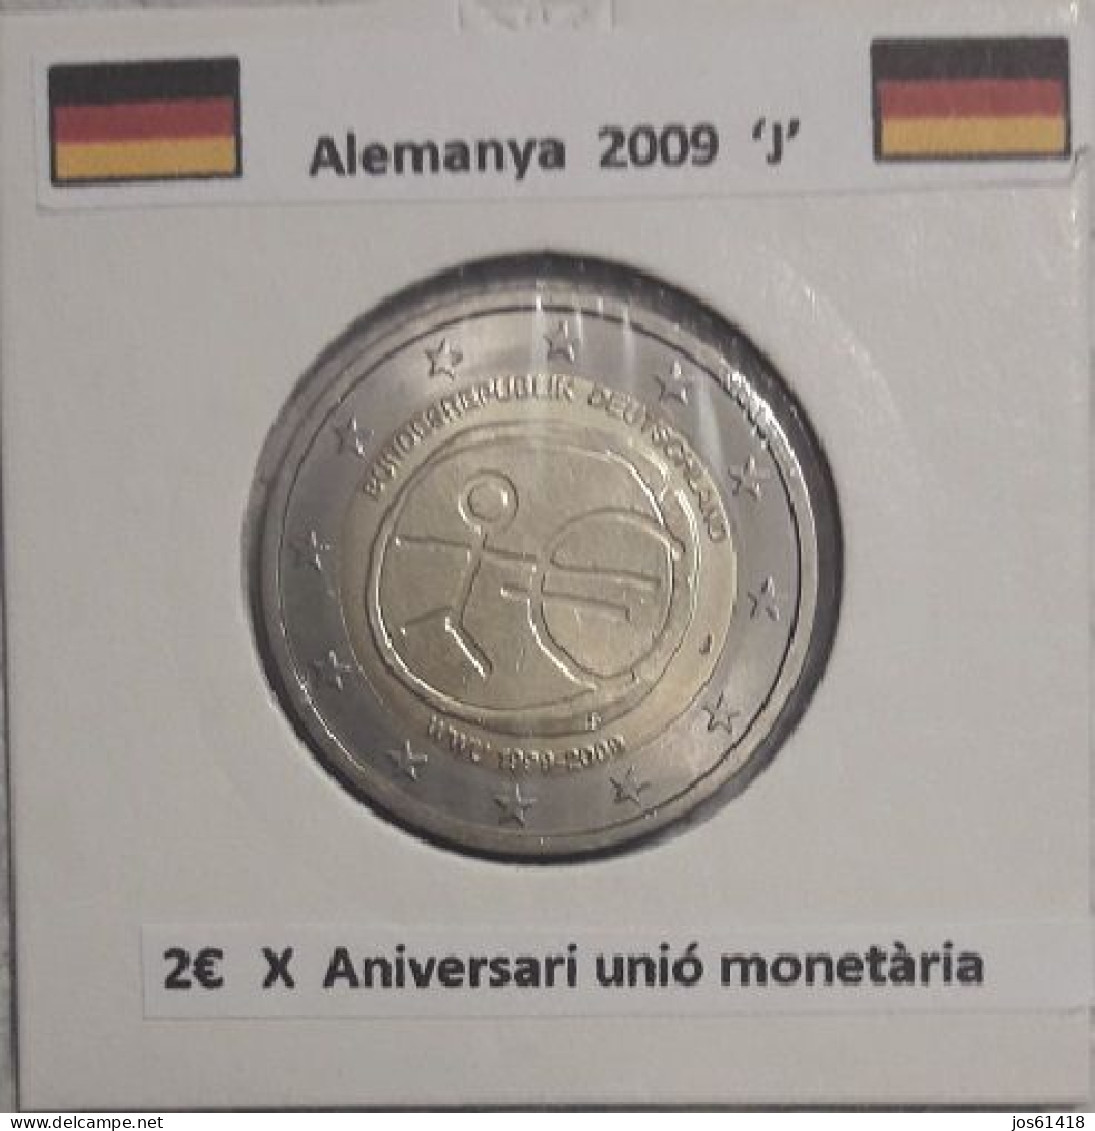 2 Euros Alemania / Germany  2009 WWU 1999 - 2009  D,G O J Sin Circular - Germany